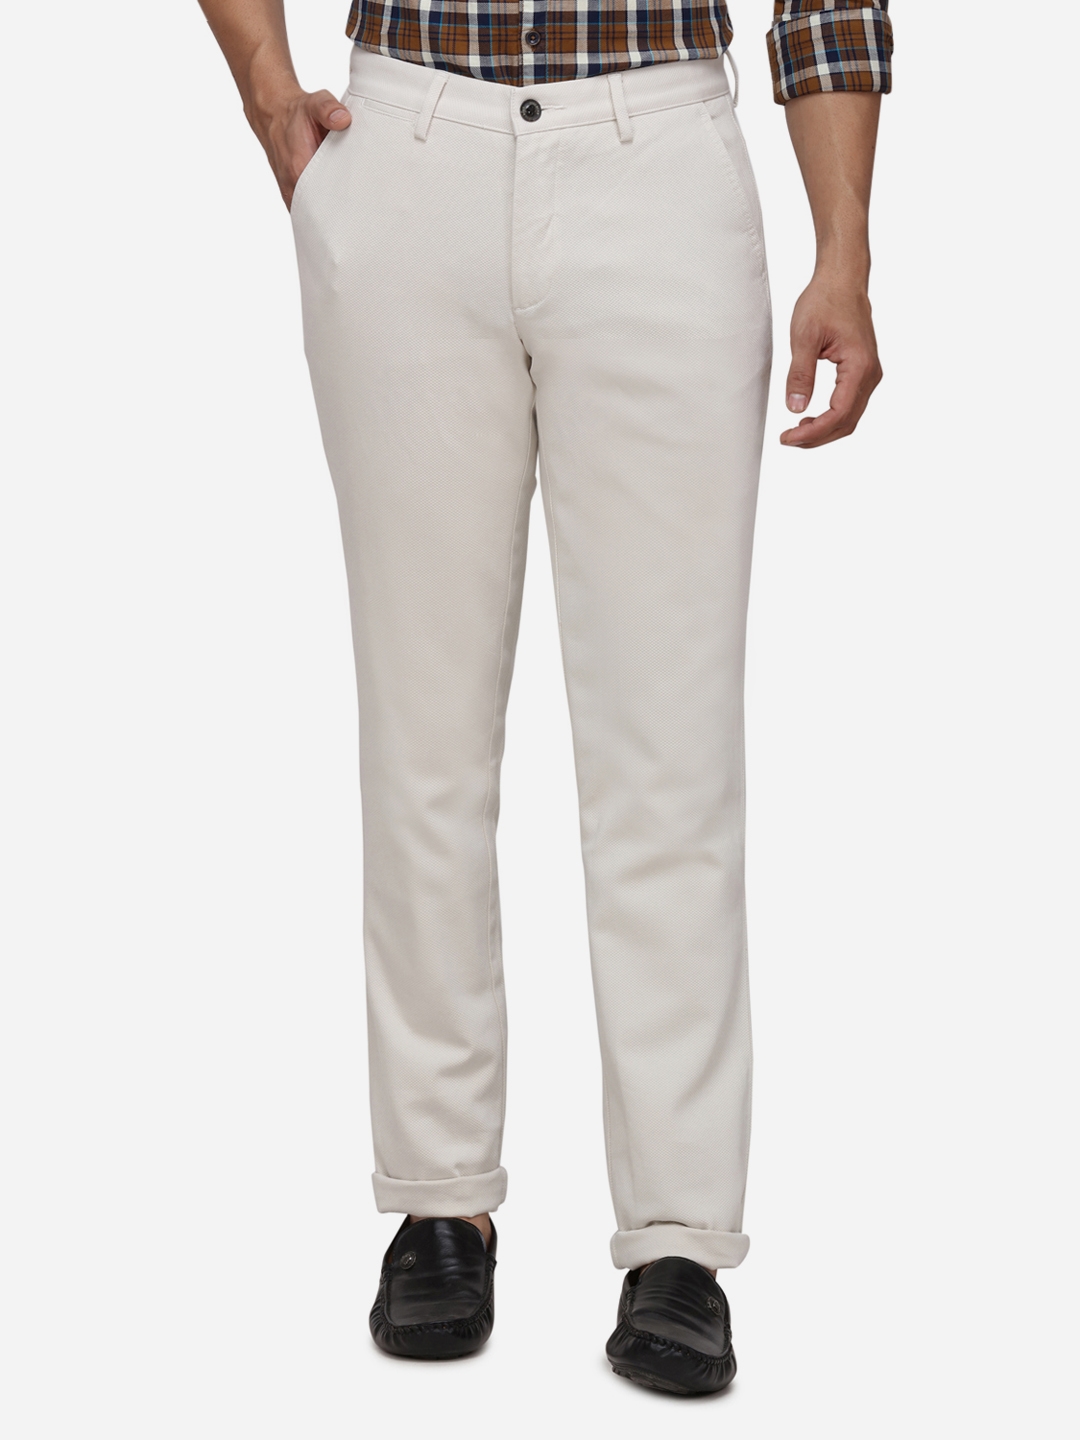 JadeBlue | Beige Solid Formal Trousers (JBCT116/1,CLOUD DANCER SELF)